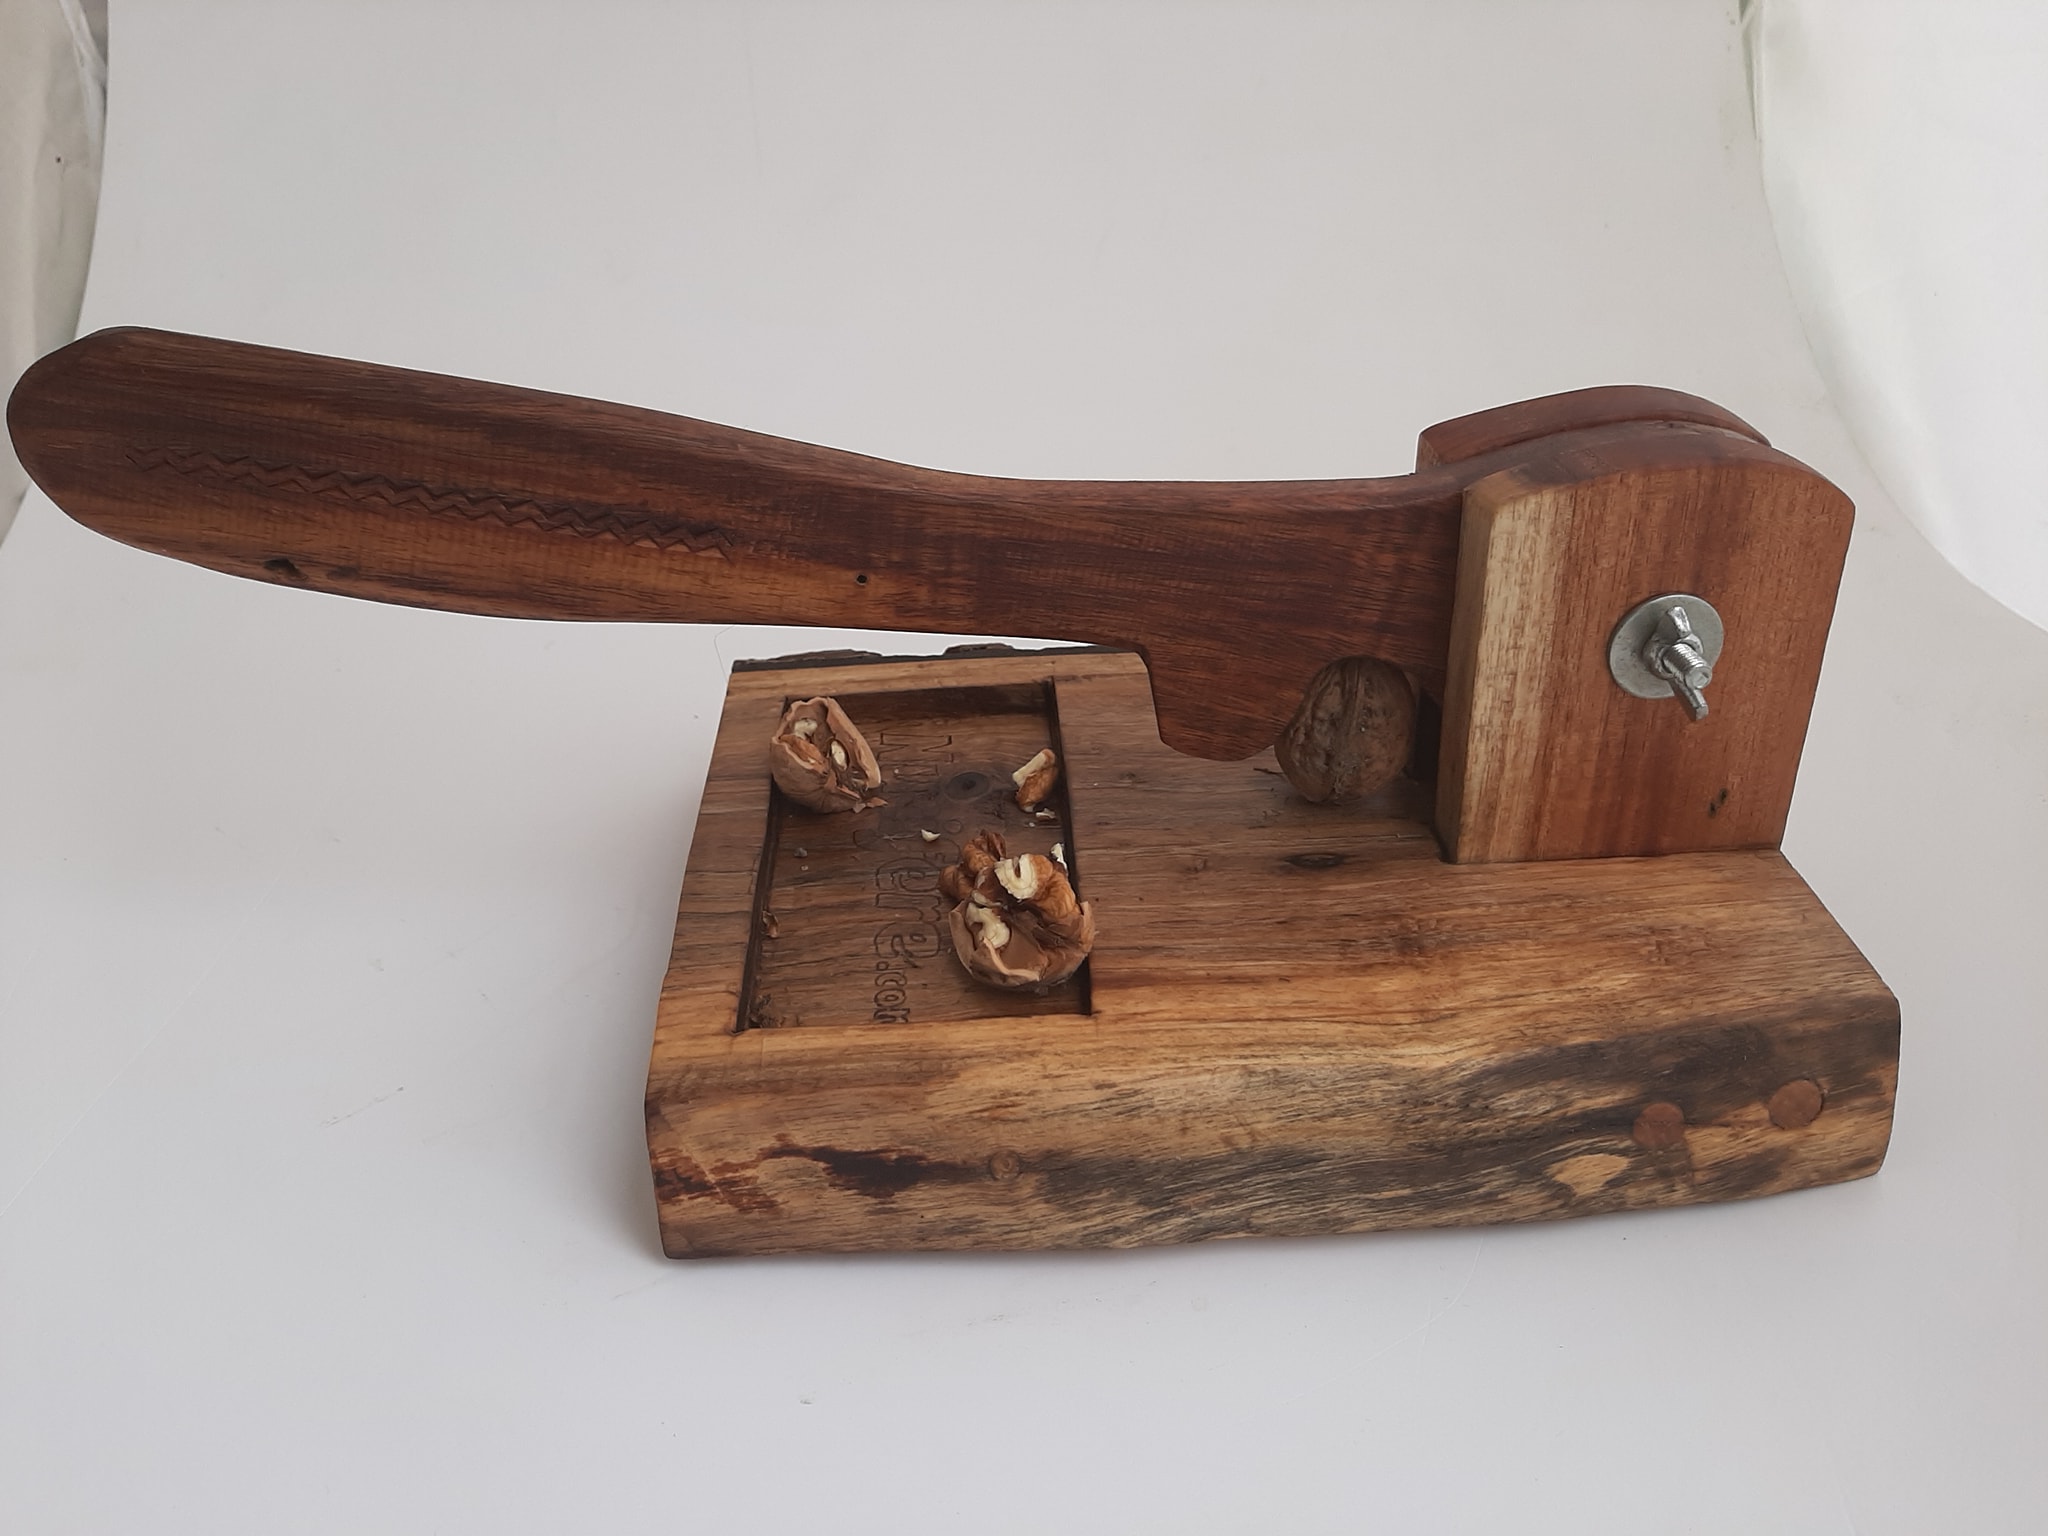 Spărgător de nuci personalizat, realizat din lemn de nuc